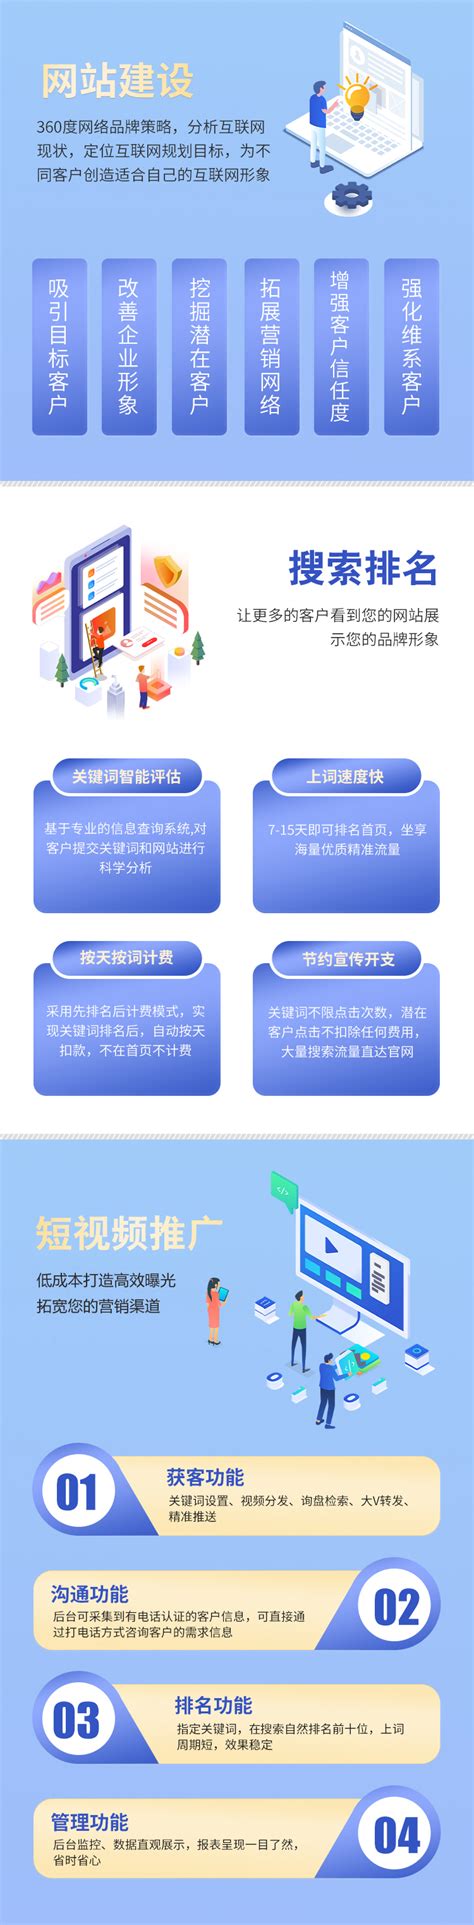 贵州网站建设建议模板